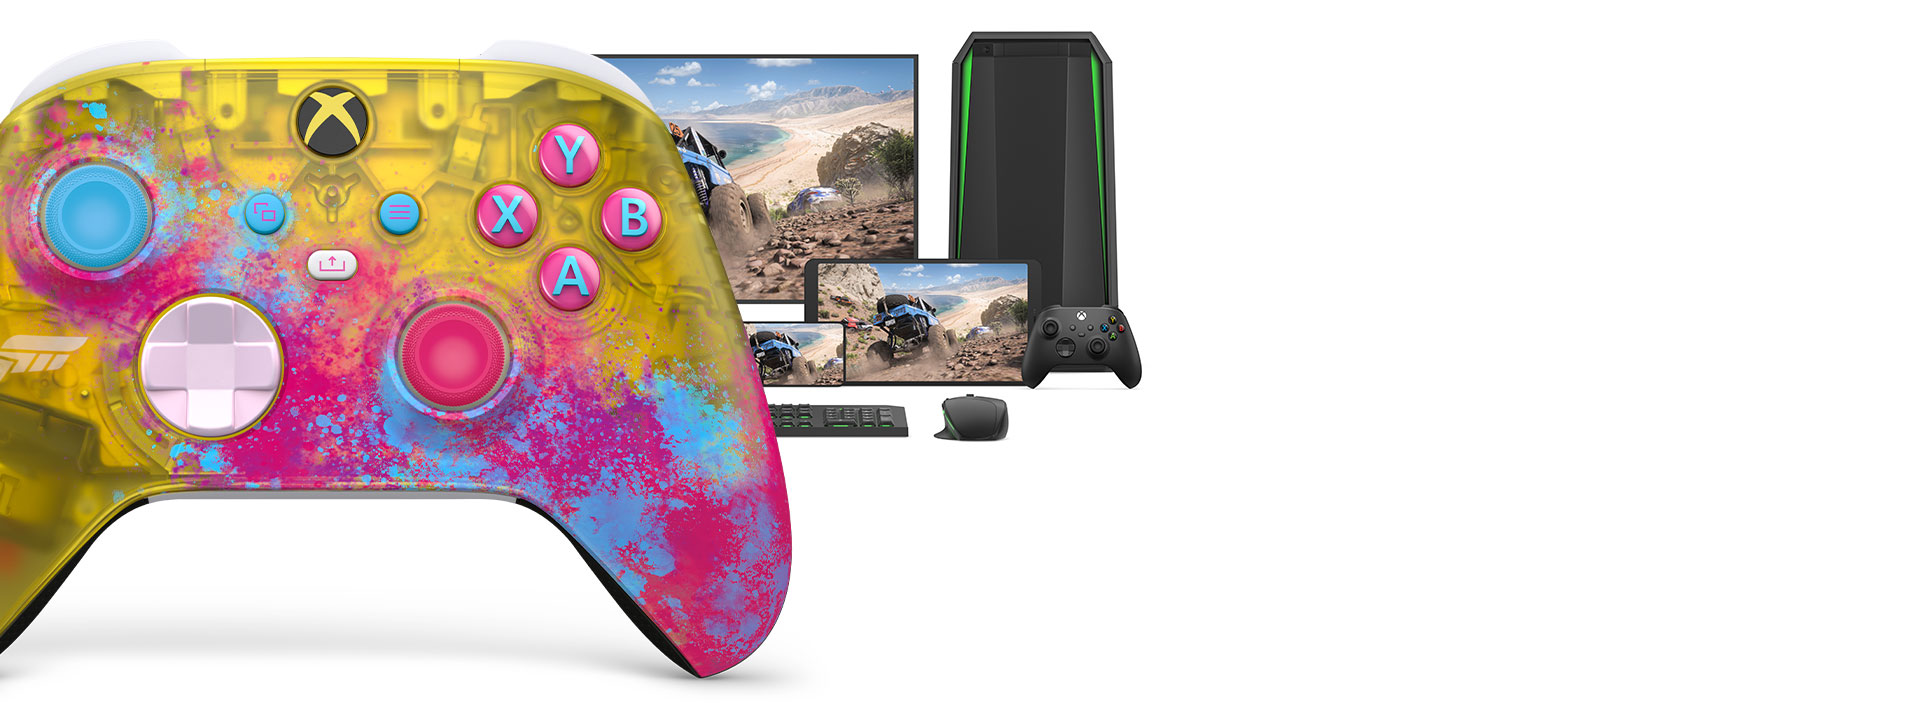 Bezdrátový ovladač pro Xbox Forza Horizon 5 s počítačem, televizí a Xbox Series S.